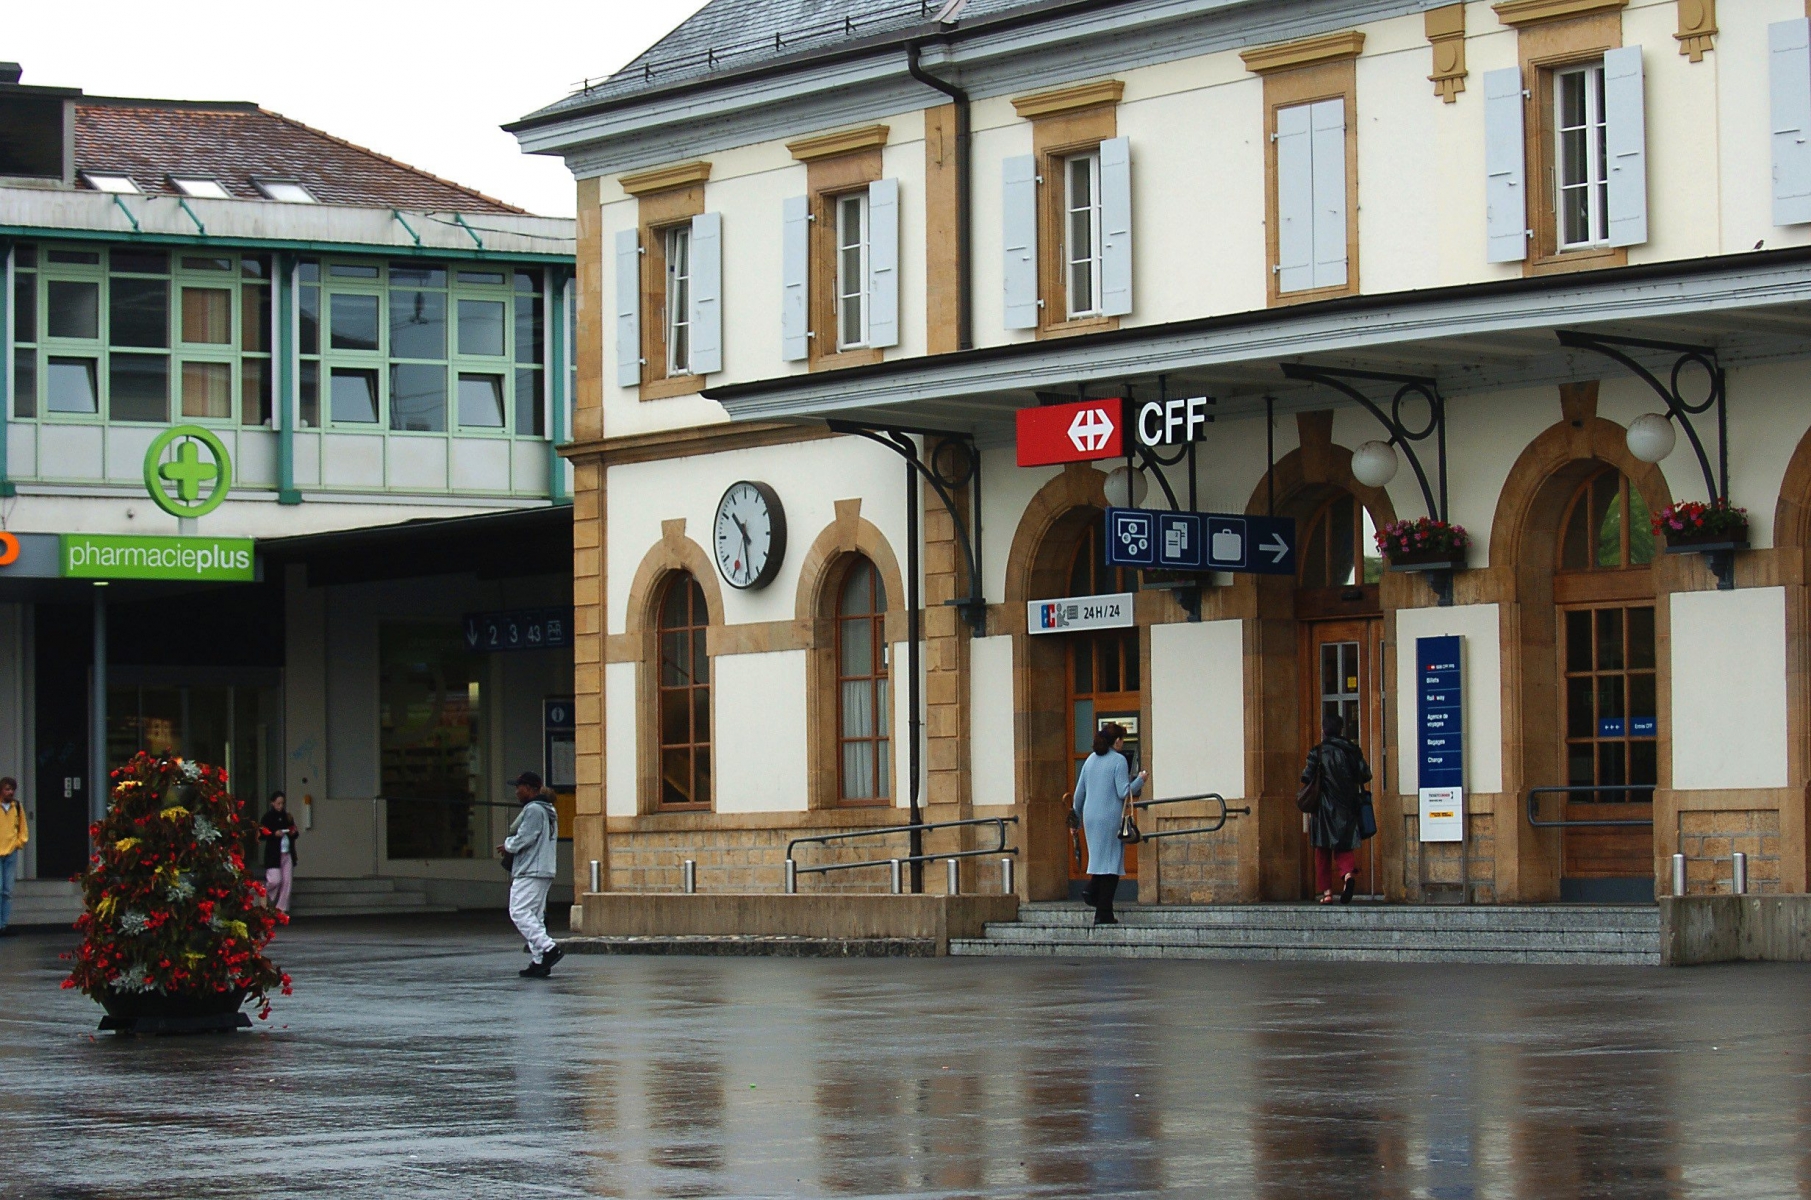 Ici, devant la gare principale d'Yverdon-les-Bains.

